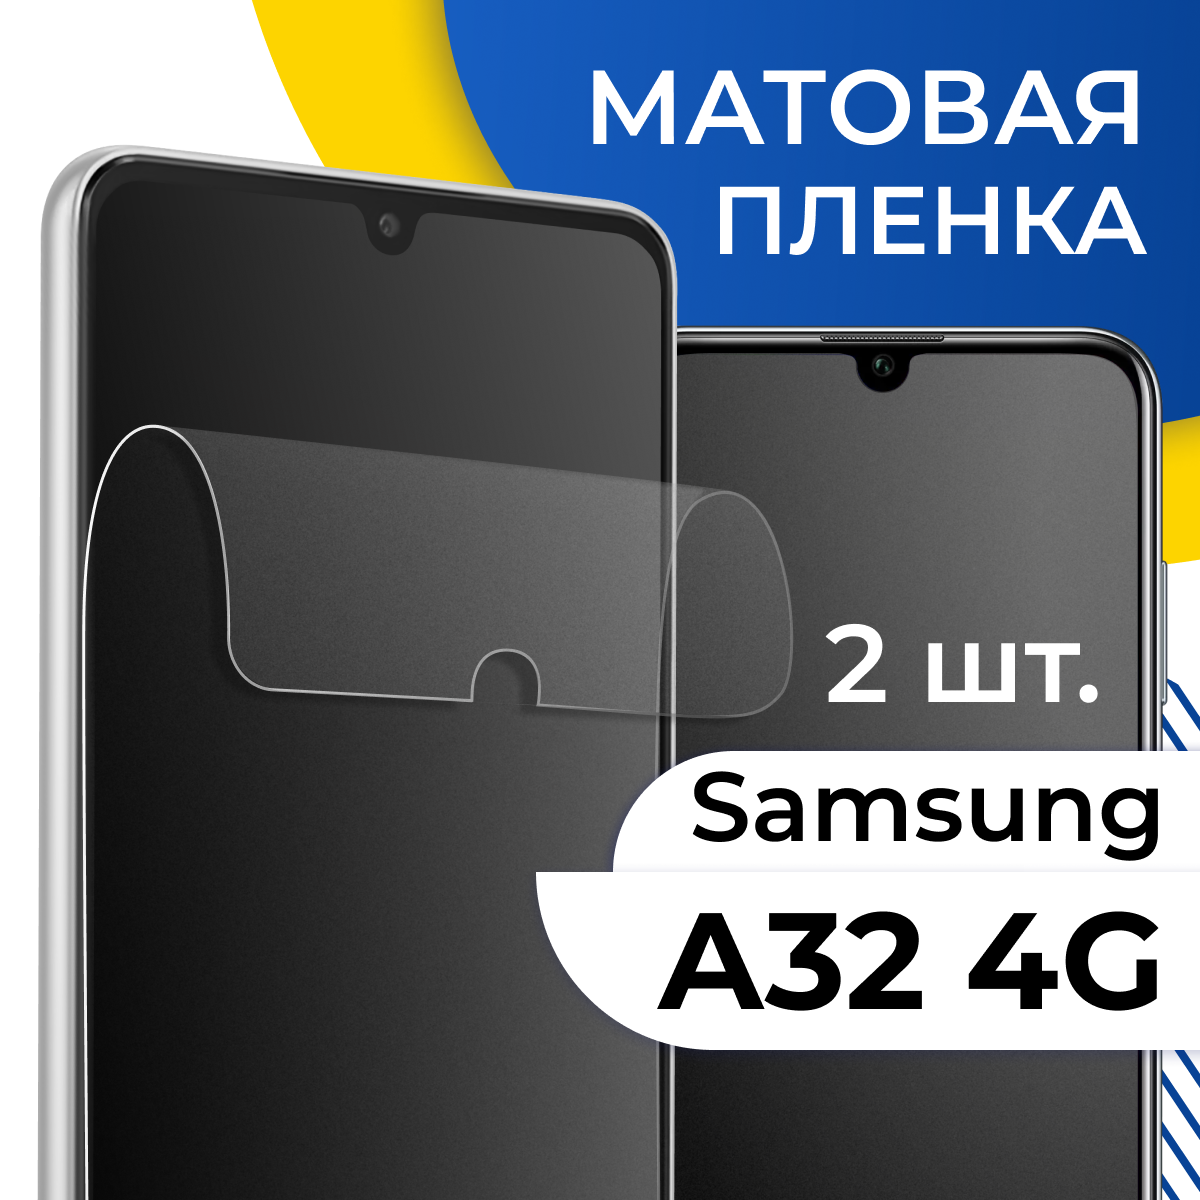 Комплект 2 шт. Матовая гидрогелевая пленка для телефона Samsung Galaxy A32 4G / Самовосстанавливающаяся защитная пленка на смартфон Самсунг Галакси А32 4Г